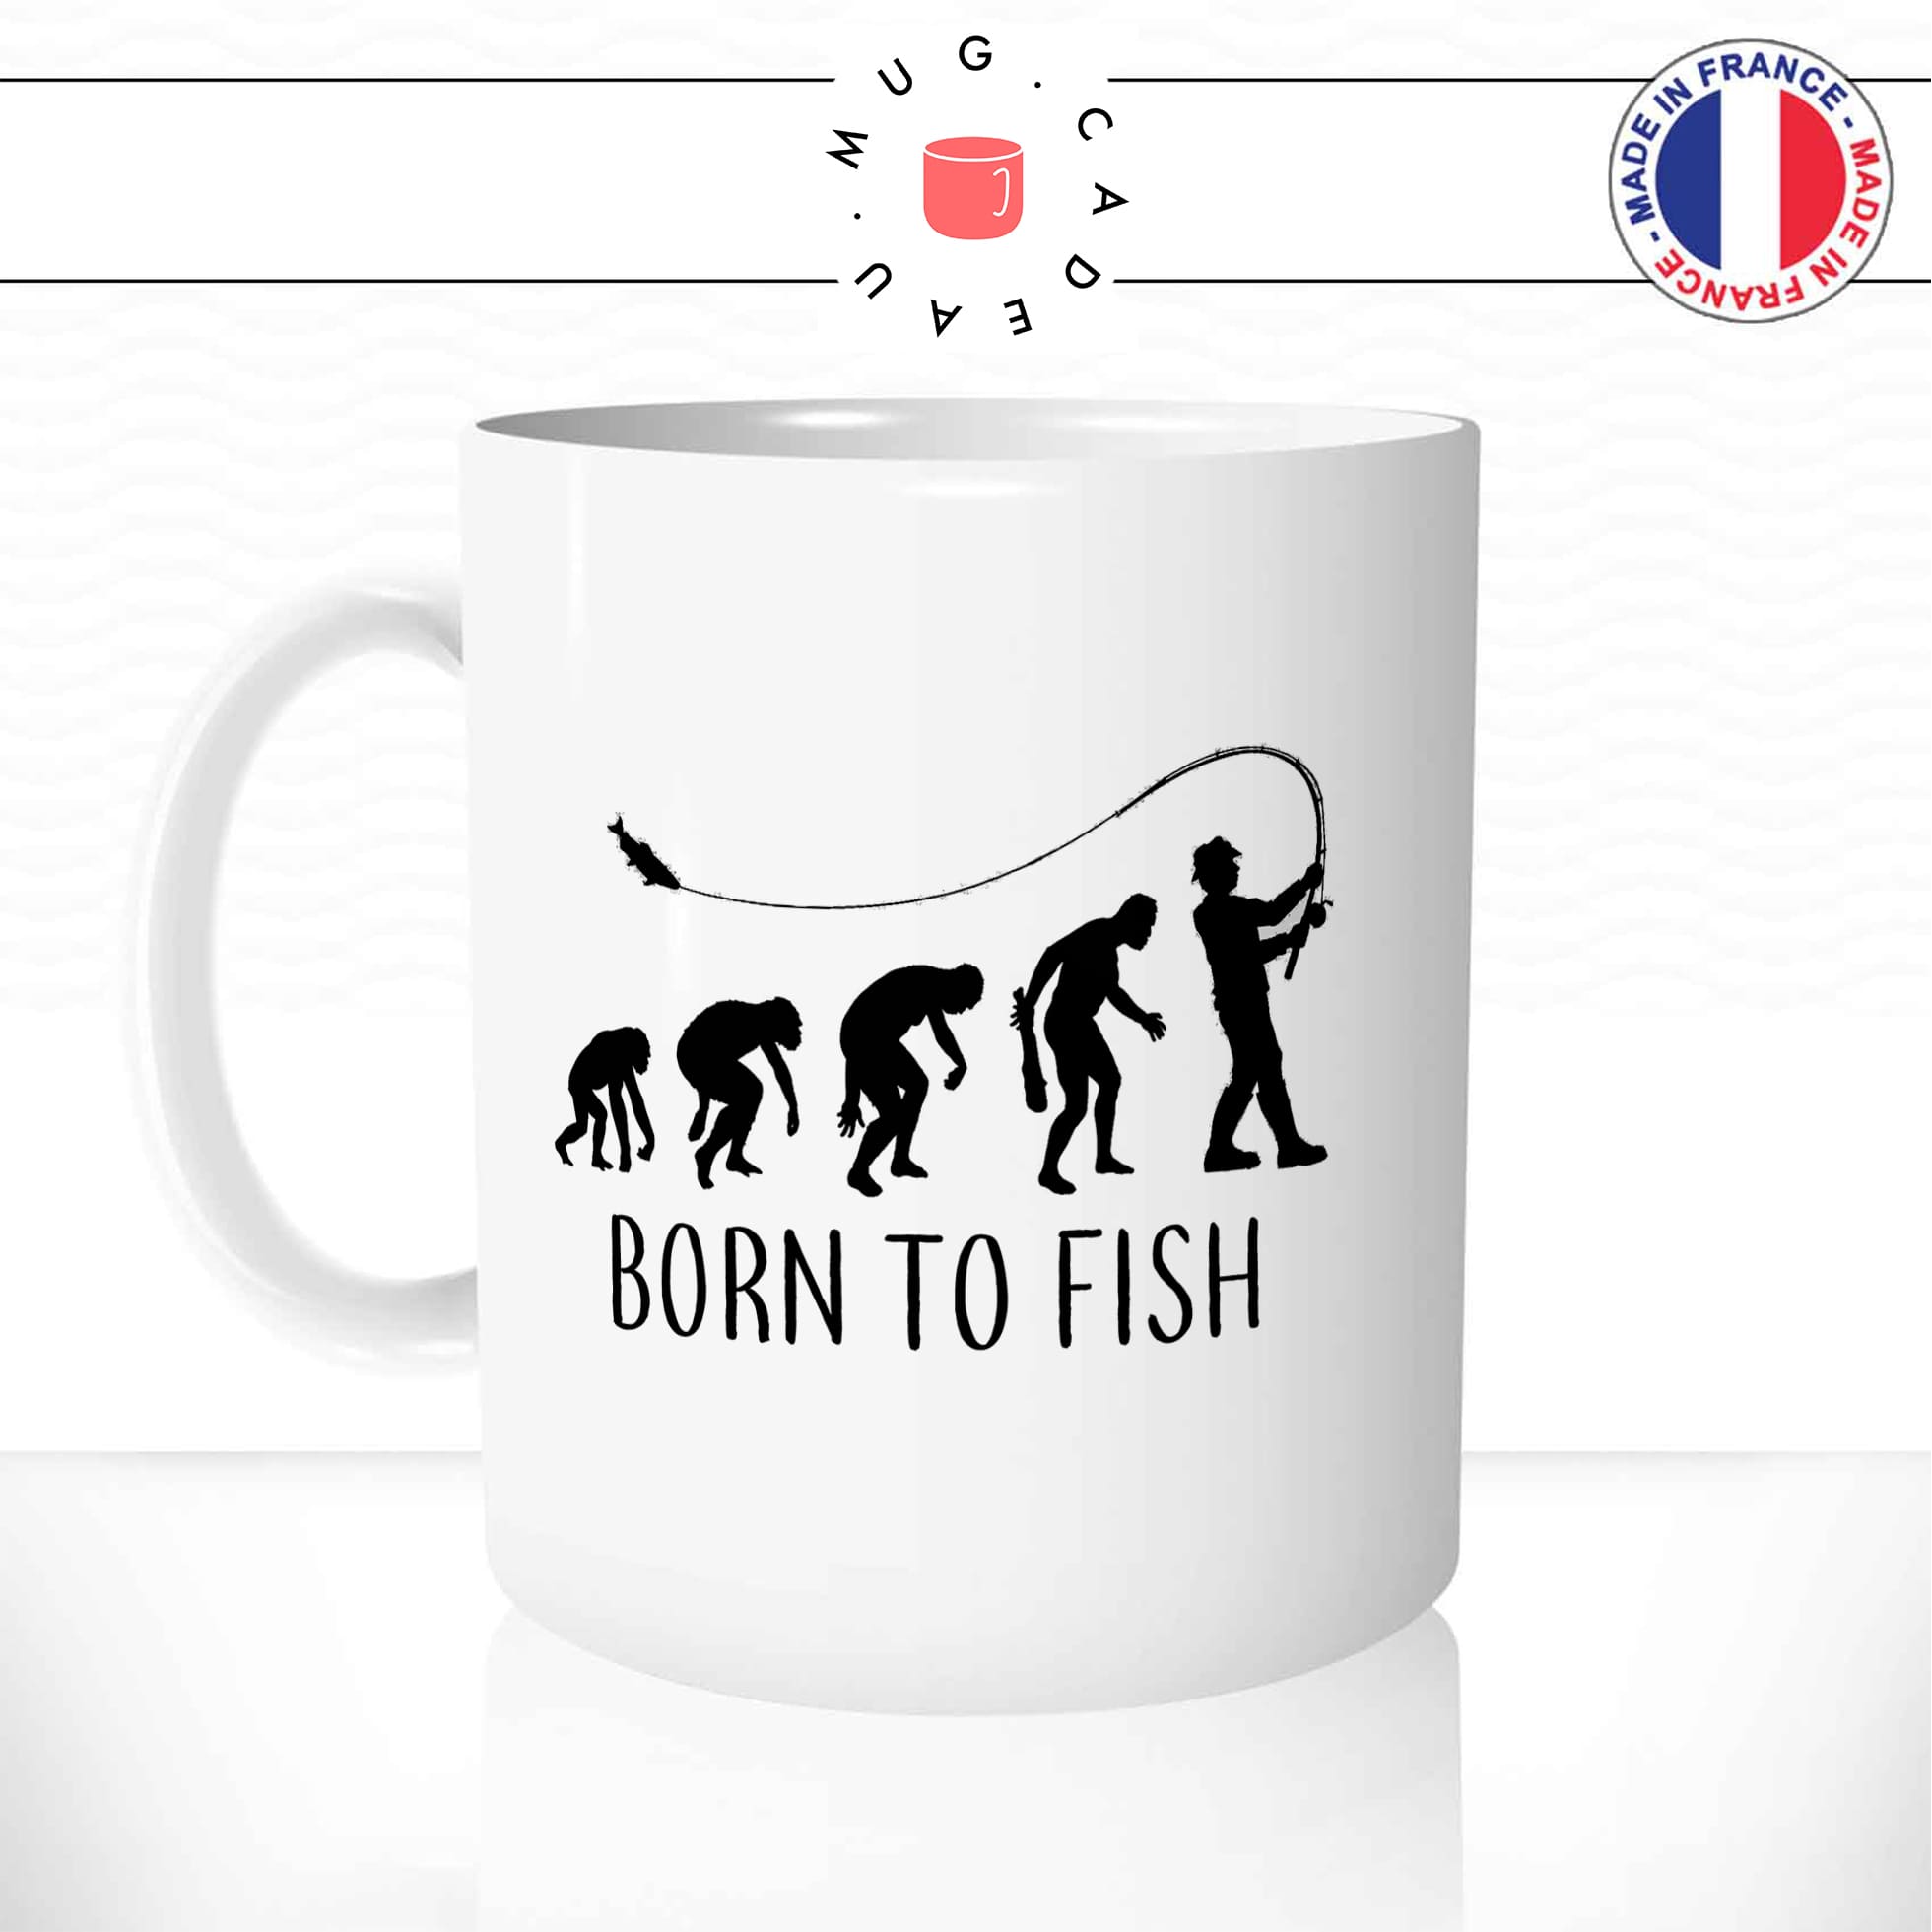 mug-tasse-born-to-fish-peche-pecheur-poisson-passion-sport-humour-evolution-de-l'homme-fun-café-thé-idée-cadeau-originale-personnalisée